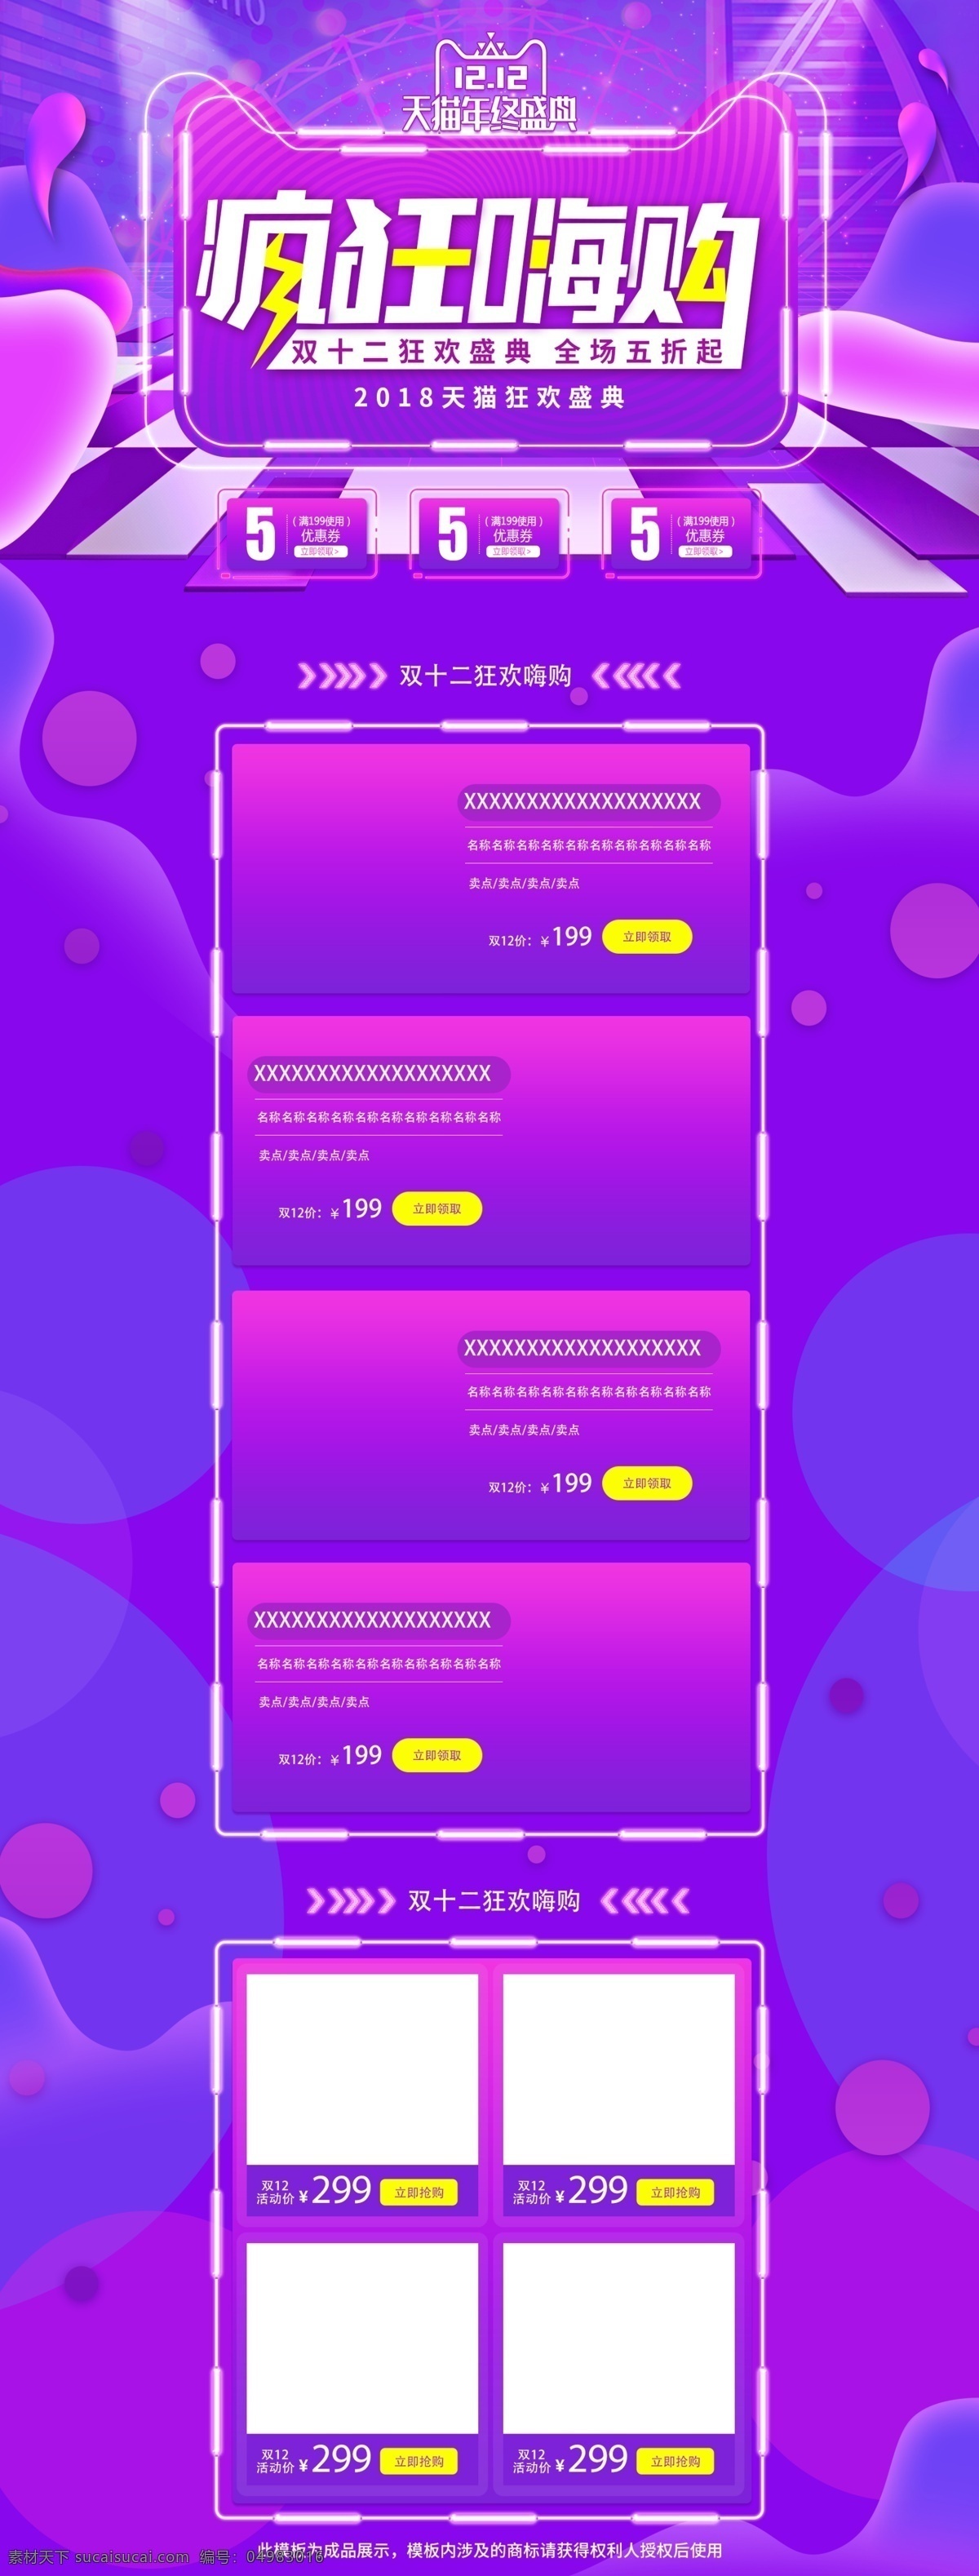 天猫 双十 二 紫色 渐变 电商 首页 模板 双12 促销 疯狂嗨购 折扣 2018 狂欢盛典 年终盛典